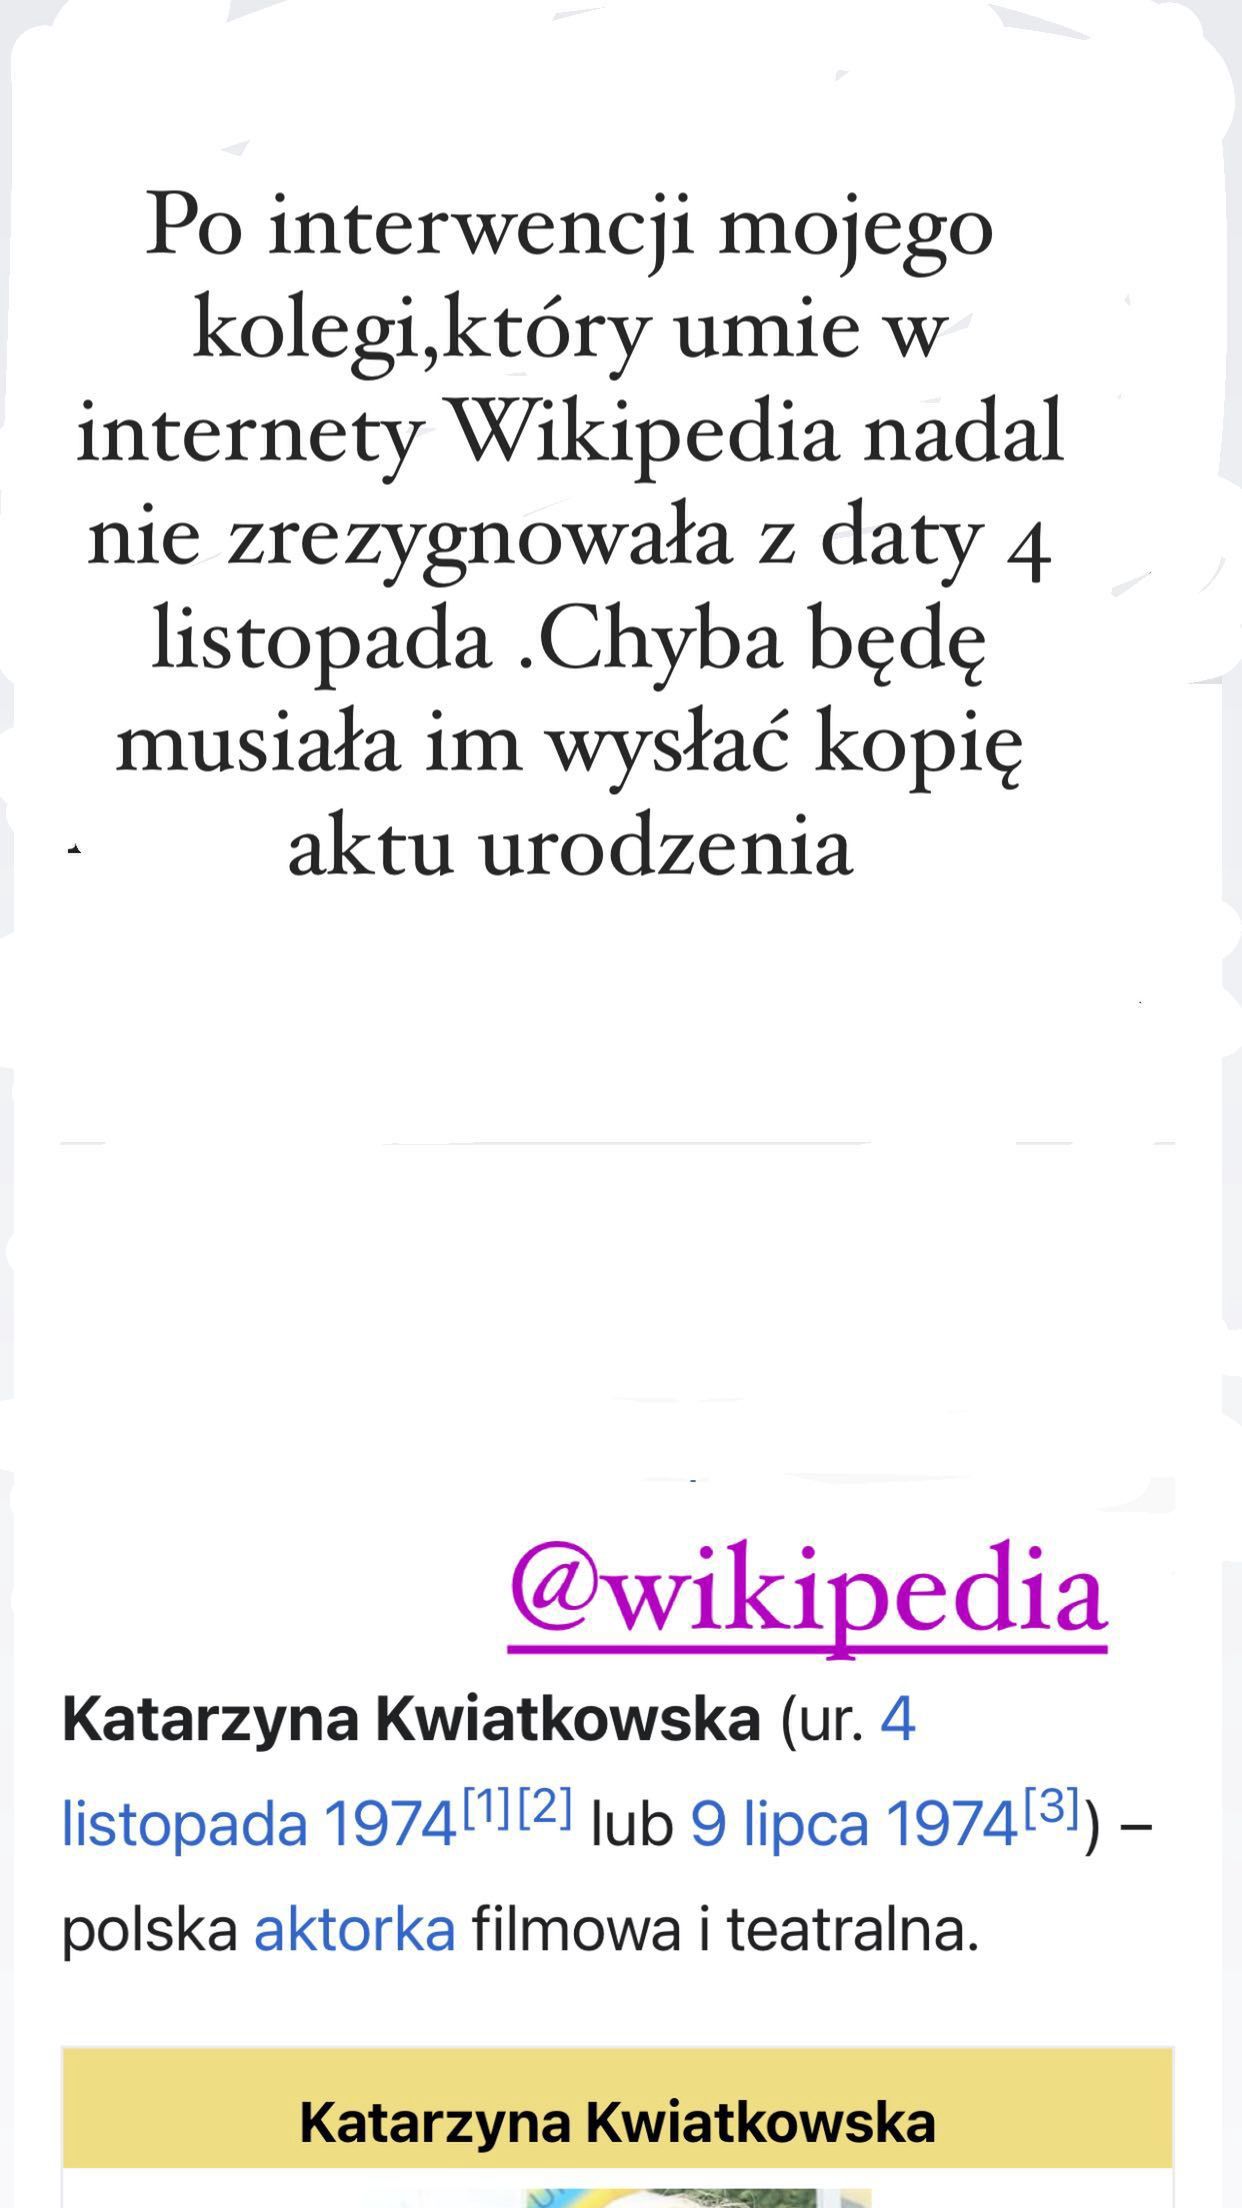 Katarzyna Kwiatkowska zaznaczyła, że w Wikipedii znajduje się niepoprawna data jej narodzin